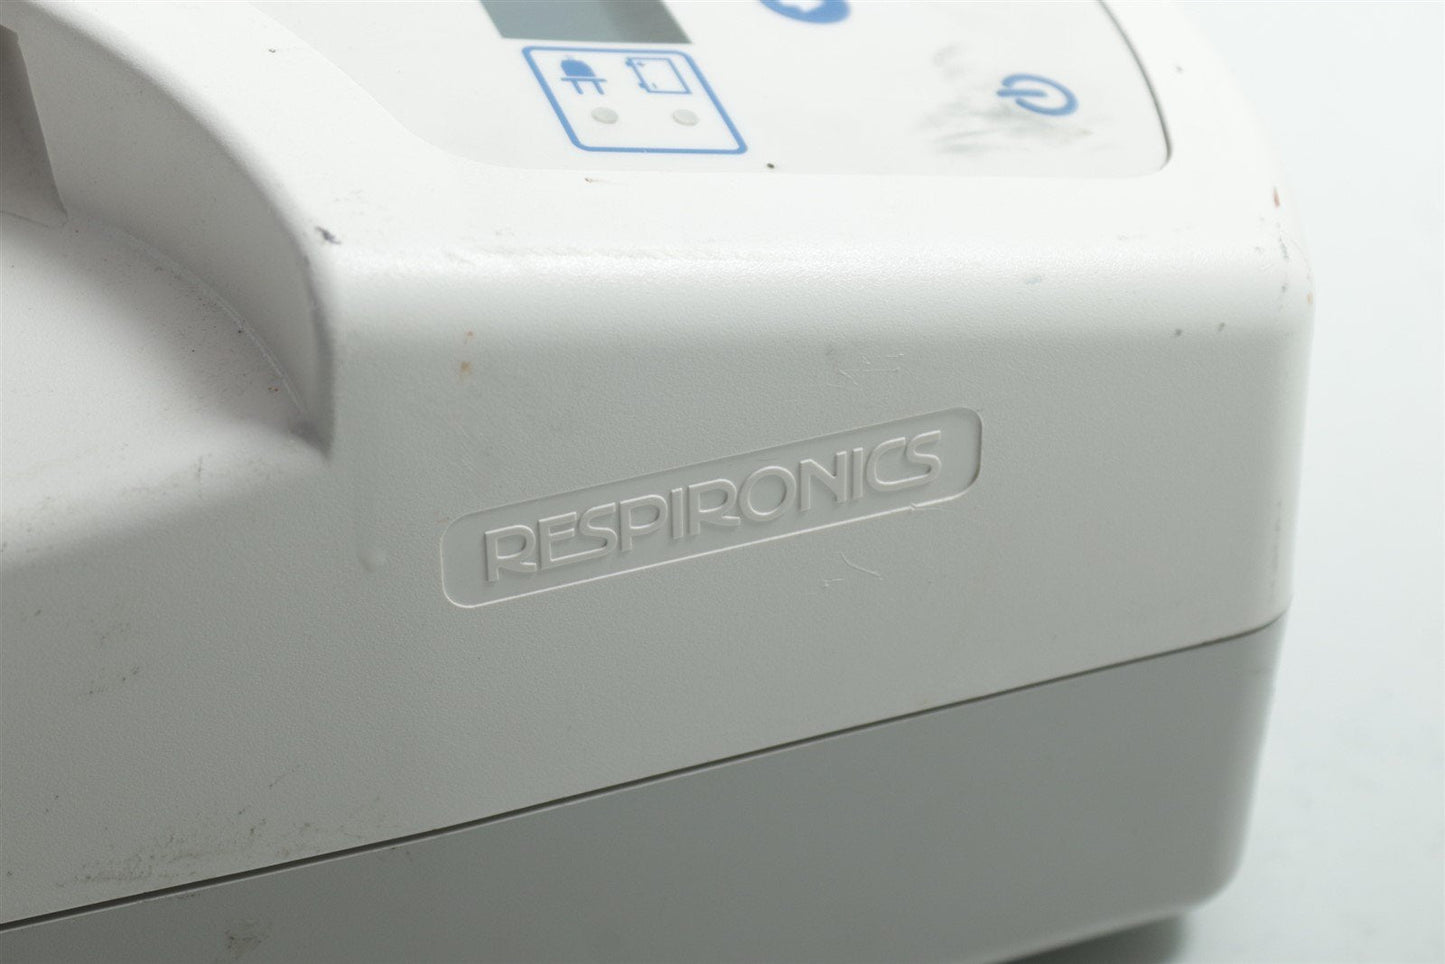 Respironics BiPAP Synchrony Ventilatory Support System 1010772